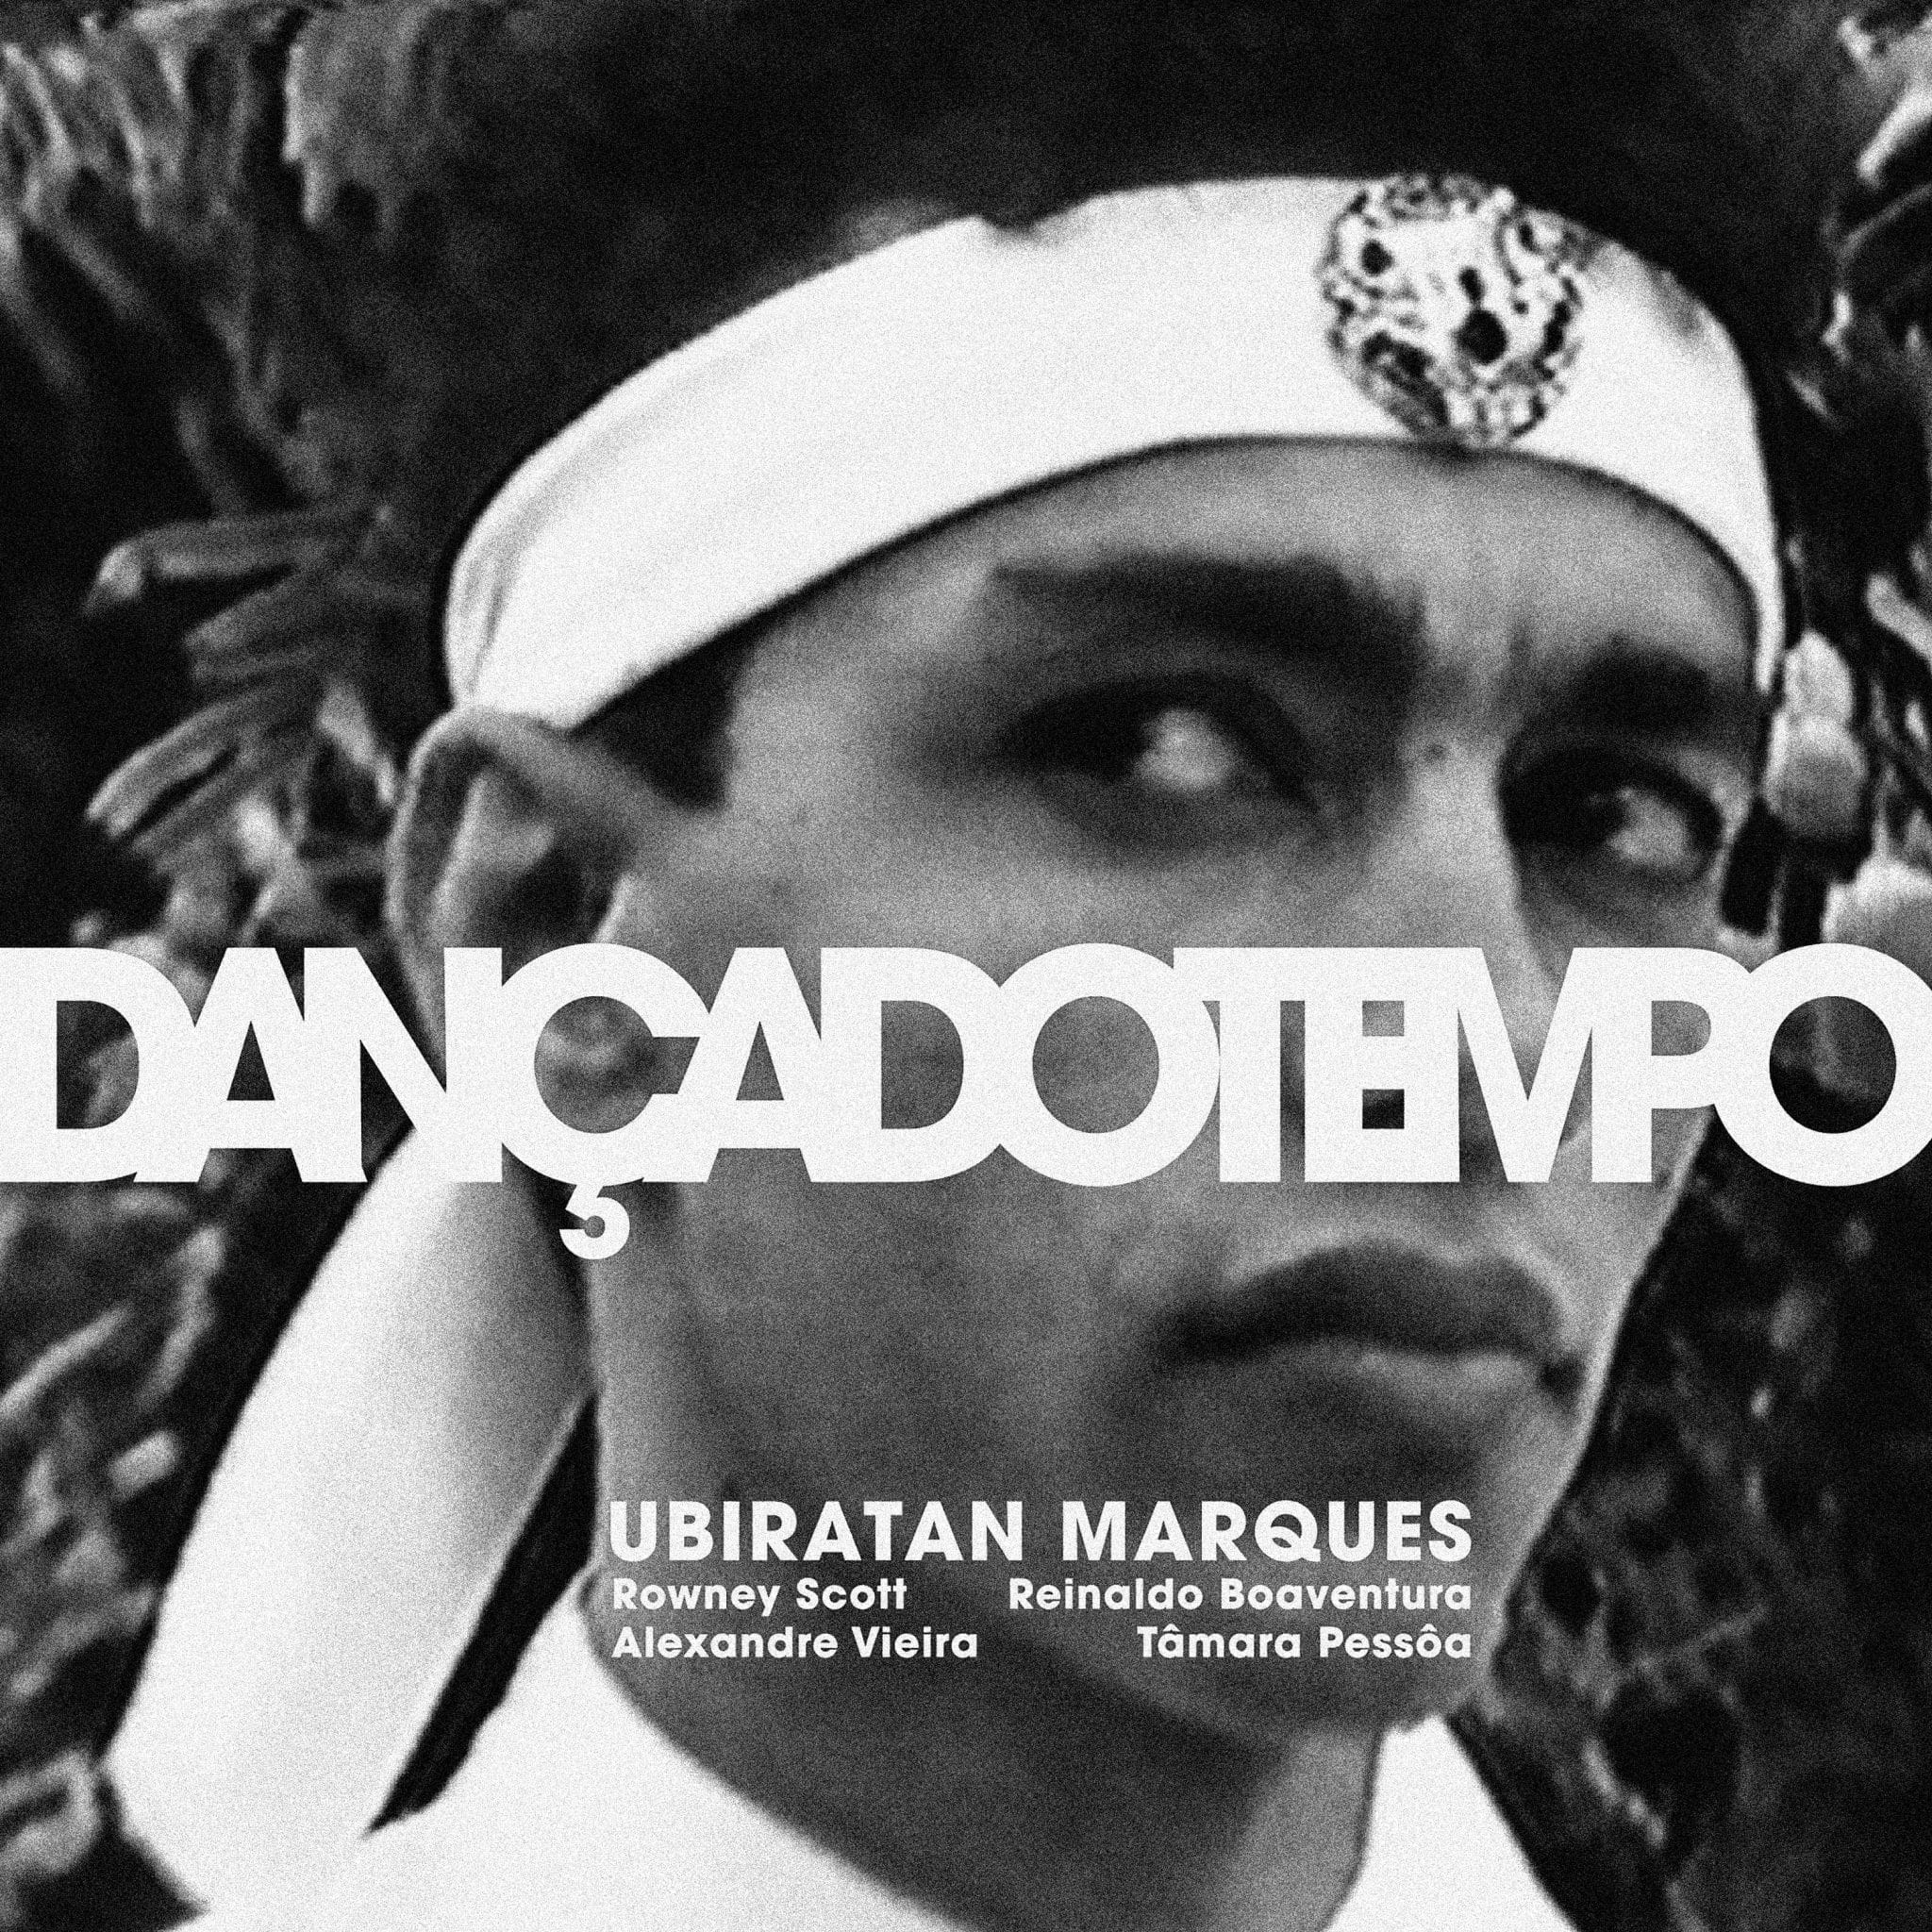 revistaprosaversoearte.com - Ubiratan Marques lança seu primeiro disco autoral 'Dança do Tempo'